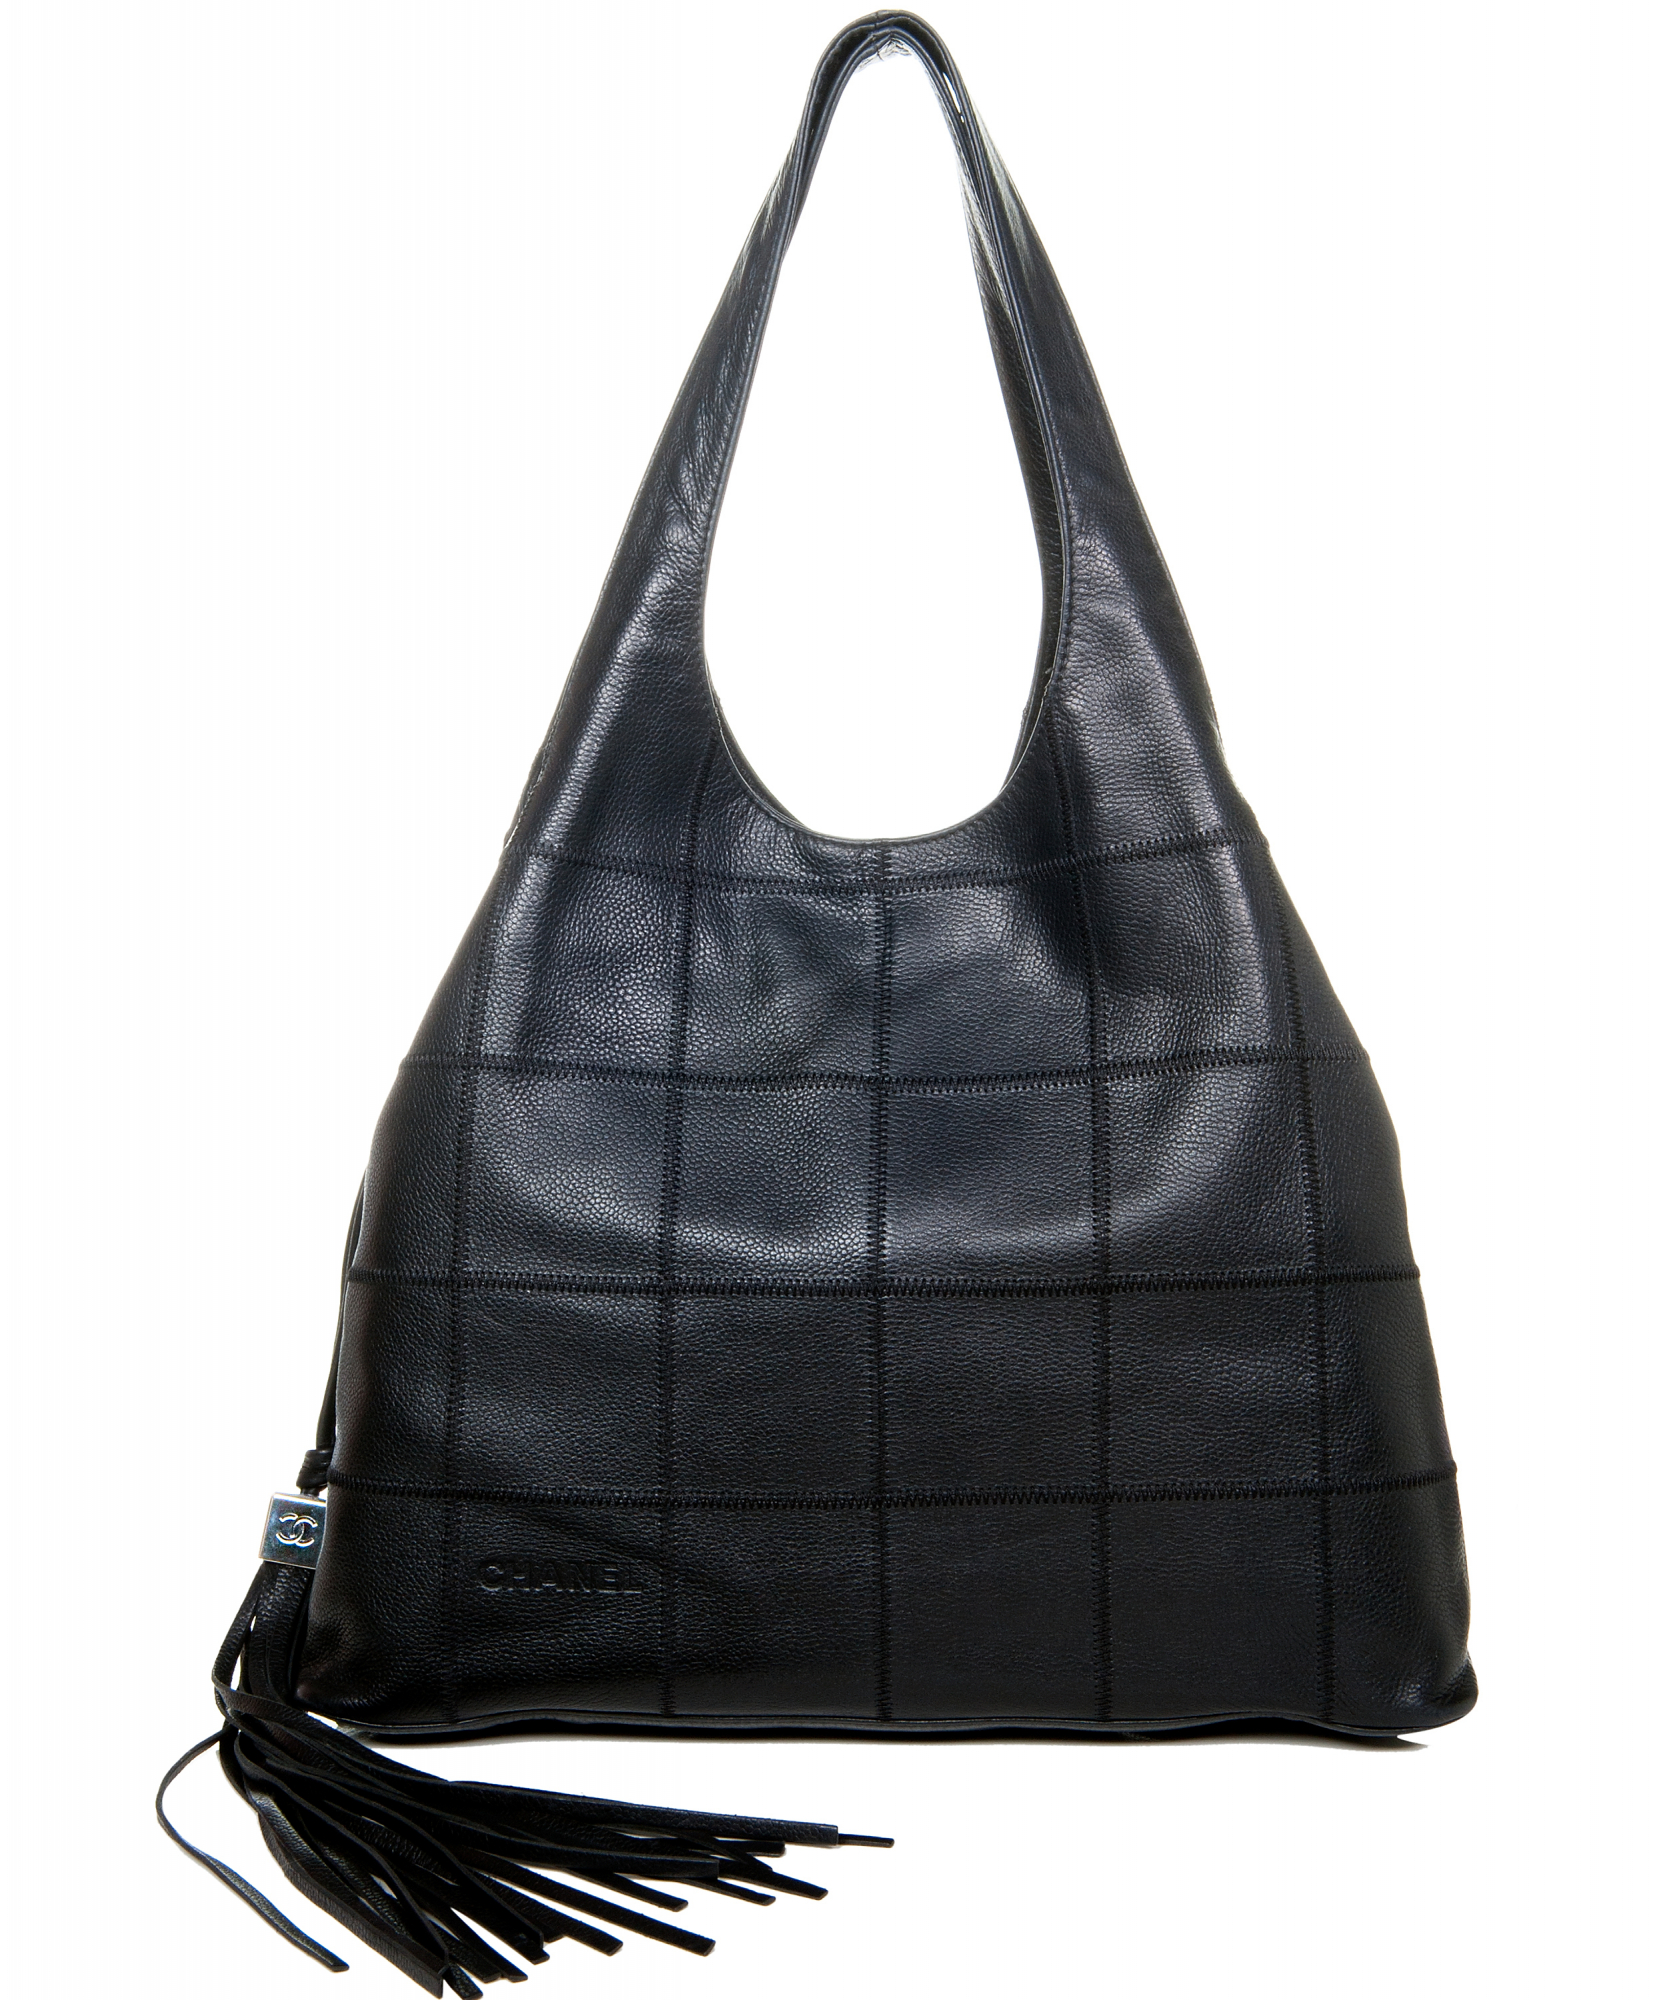 Túi xách Chanel Large Flap Bag siêu cấp da cừu màu hồng phấn size 31 cm   AS2316  Túi Xách Nữ Túi Xách Đẹp Túi Xách Giày Dép Nữ  Bước Thời Trang